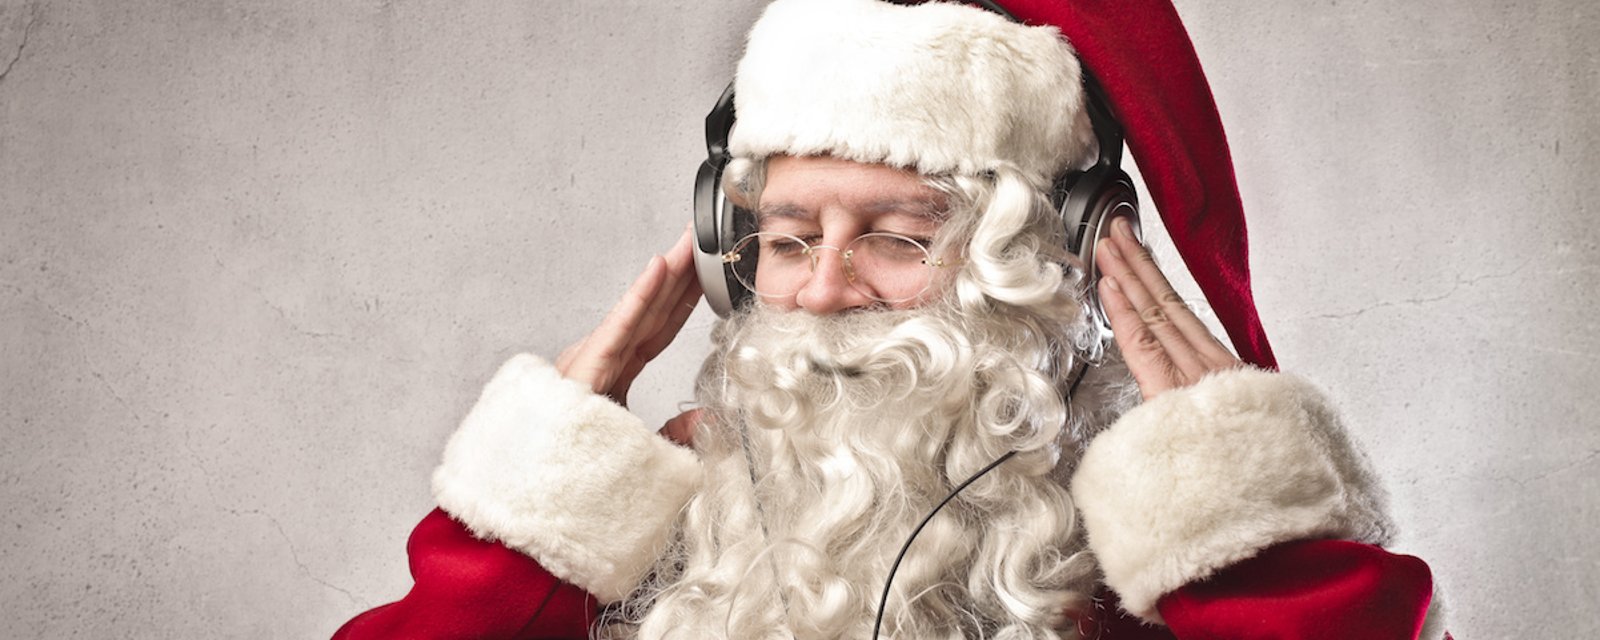 D'après les scientifiques, la musique de Noël peut épuiser mentalement